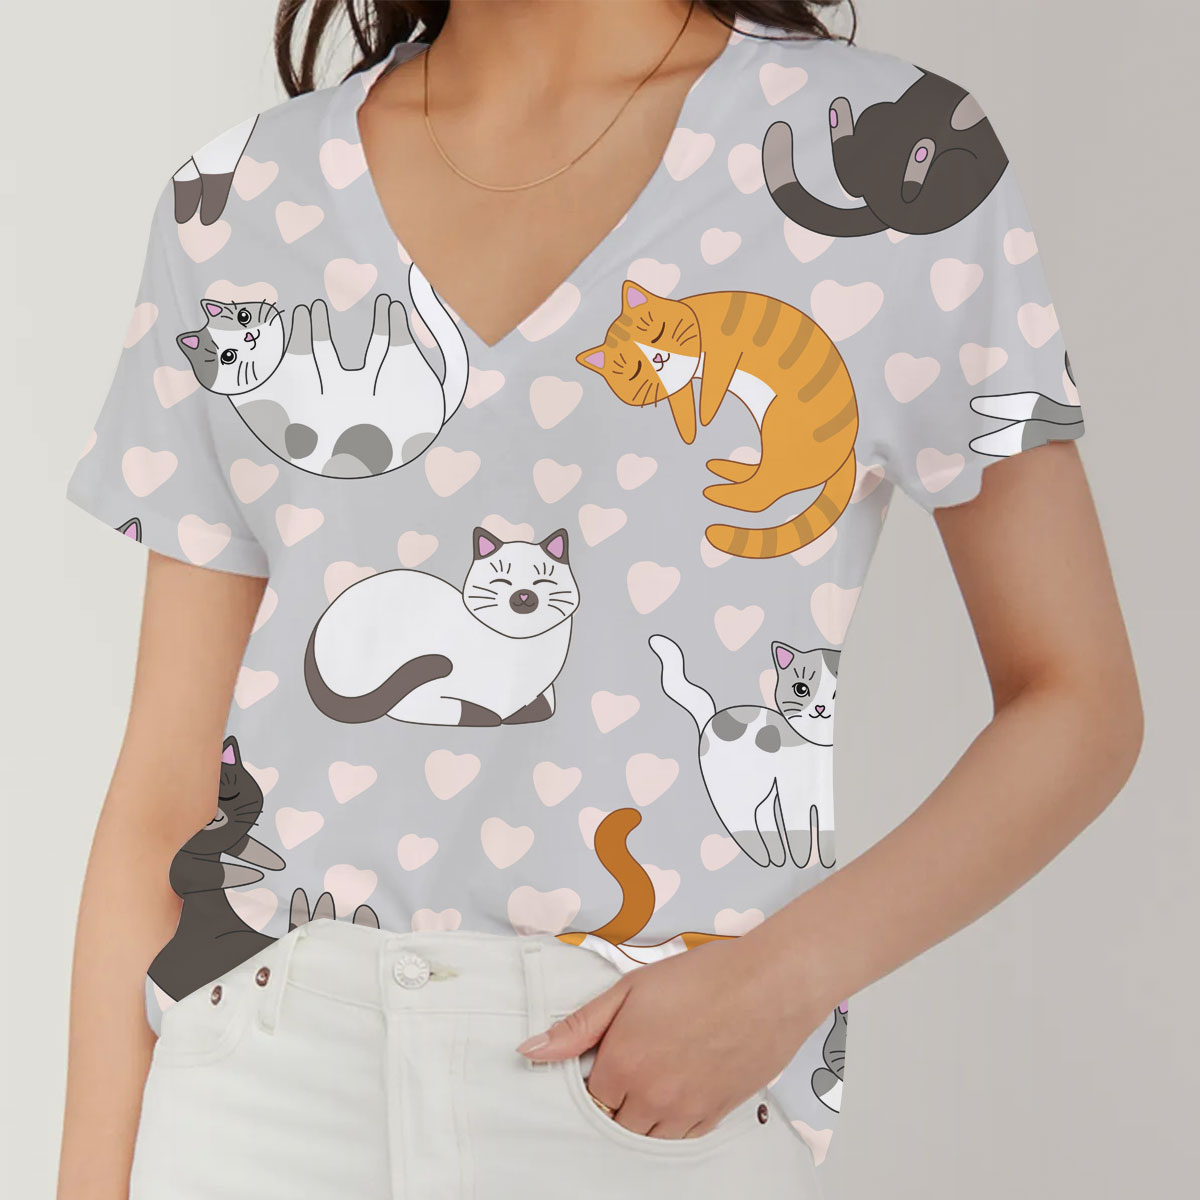 Cute Cat V-Neck Women's T-Shirt_1_2.1